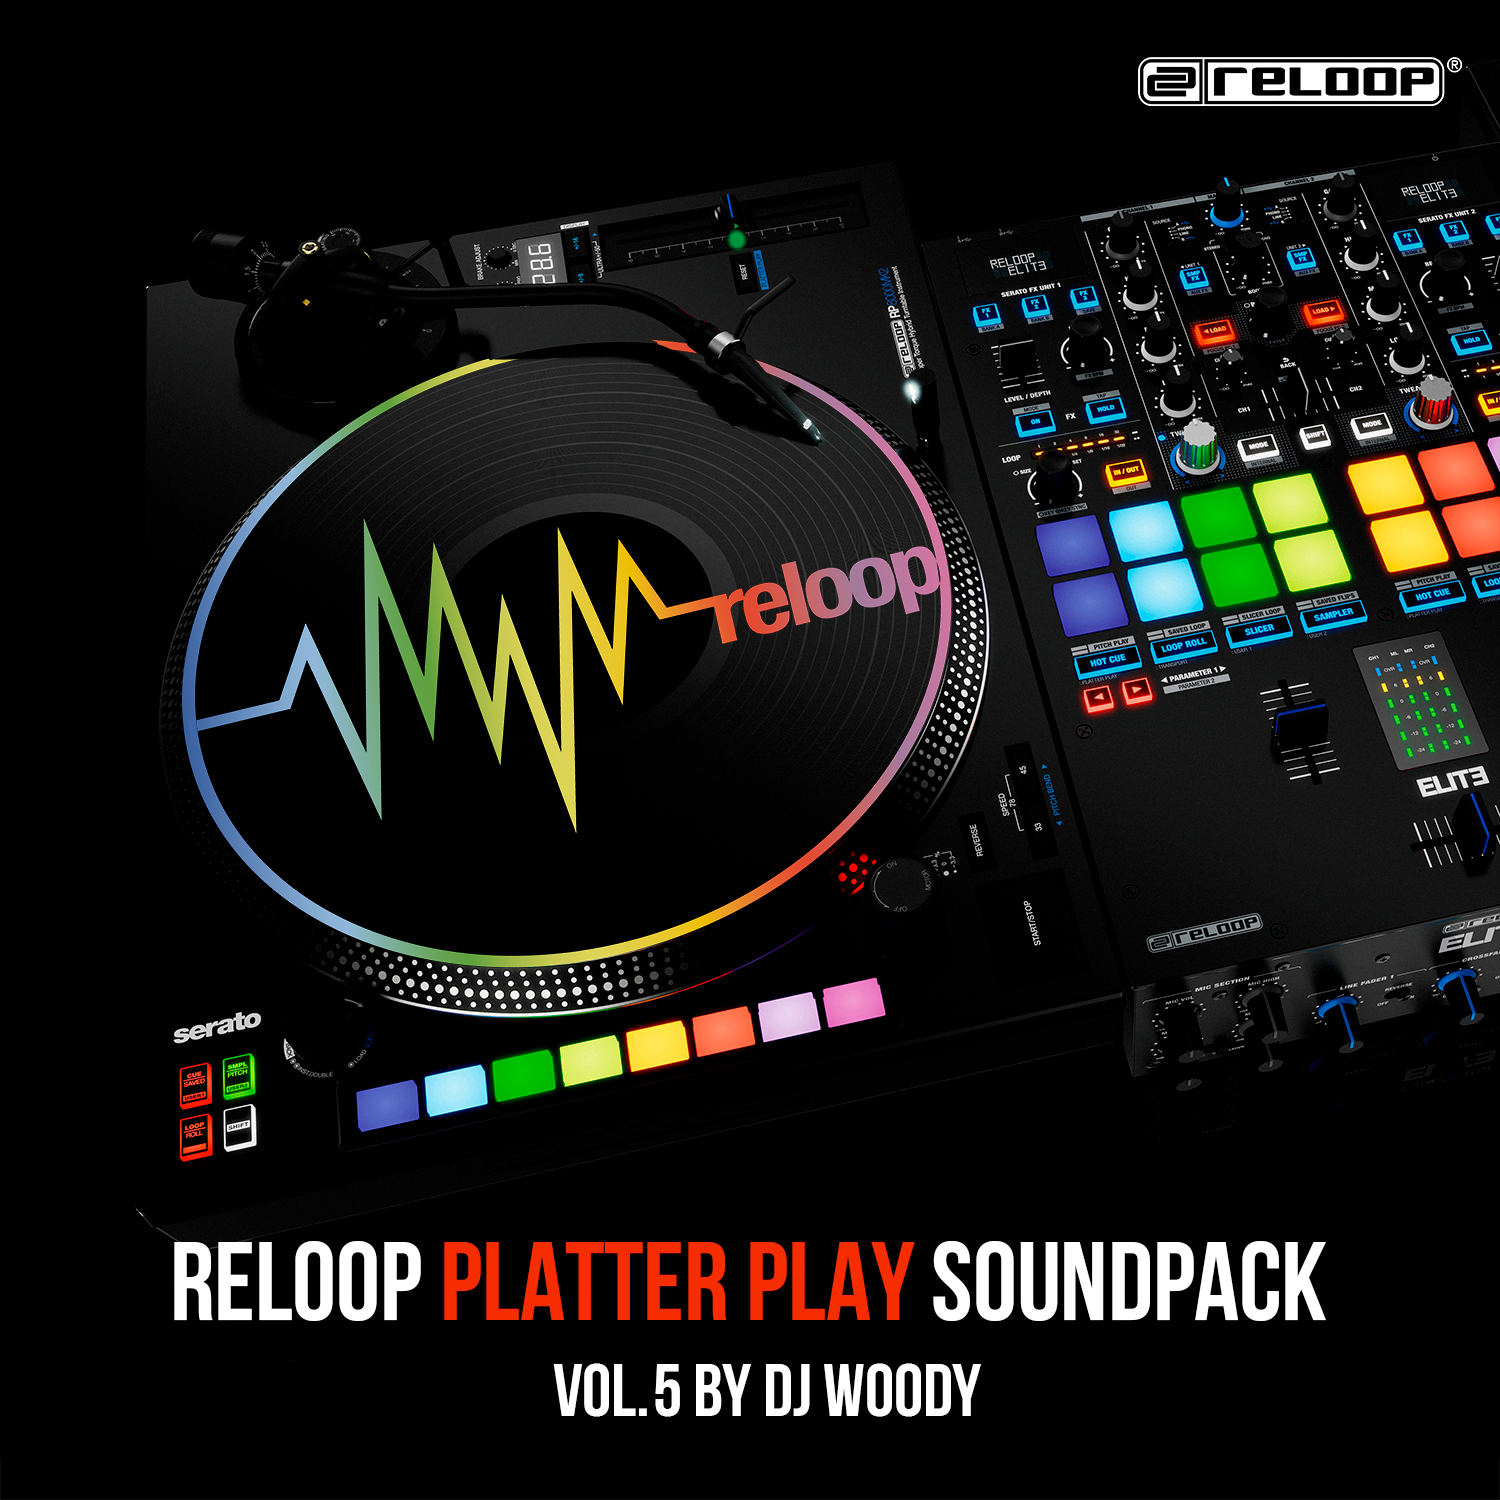 Reloop Platter Play Soundpack Vol. 5 by DJ Woody